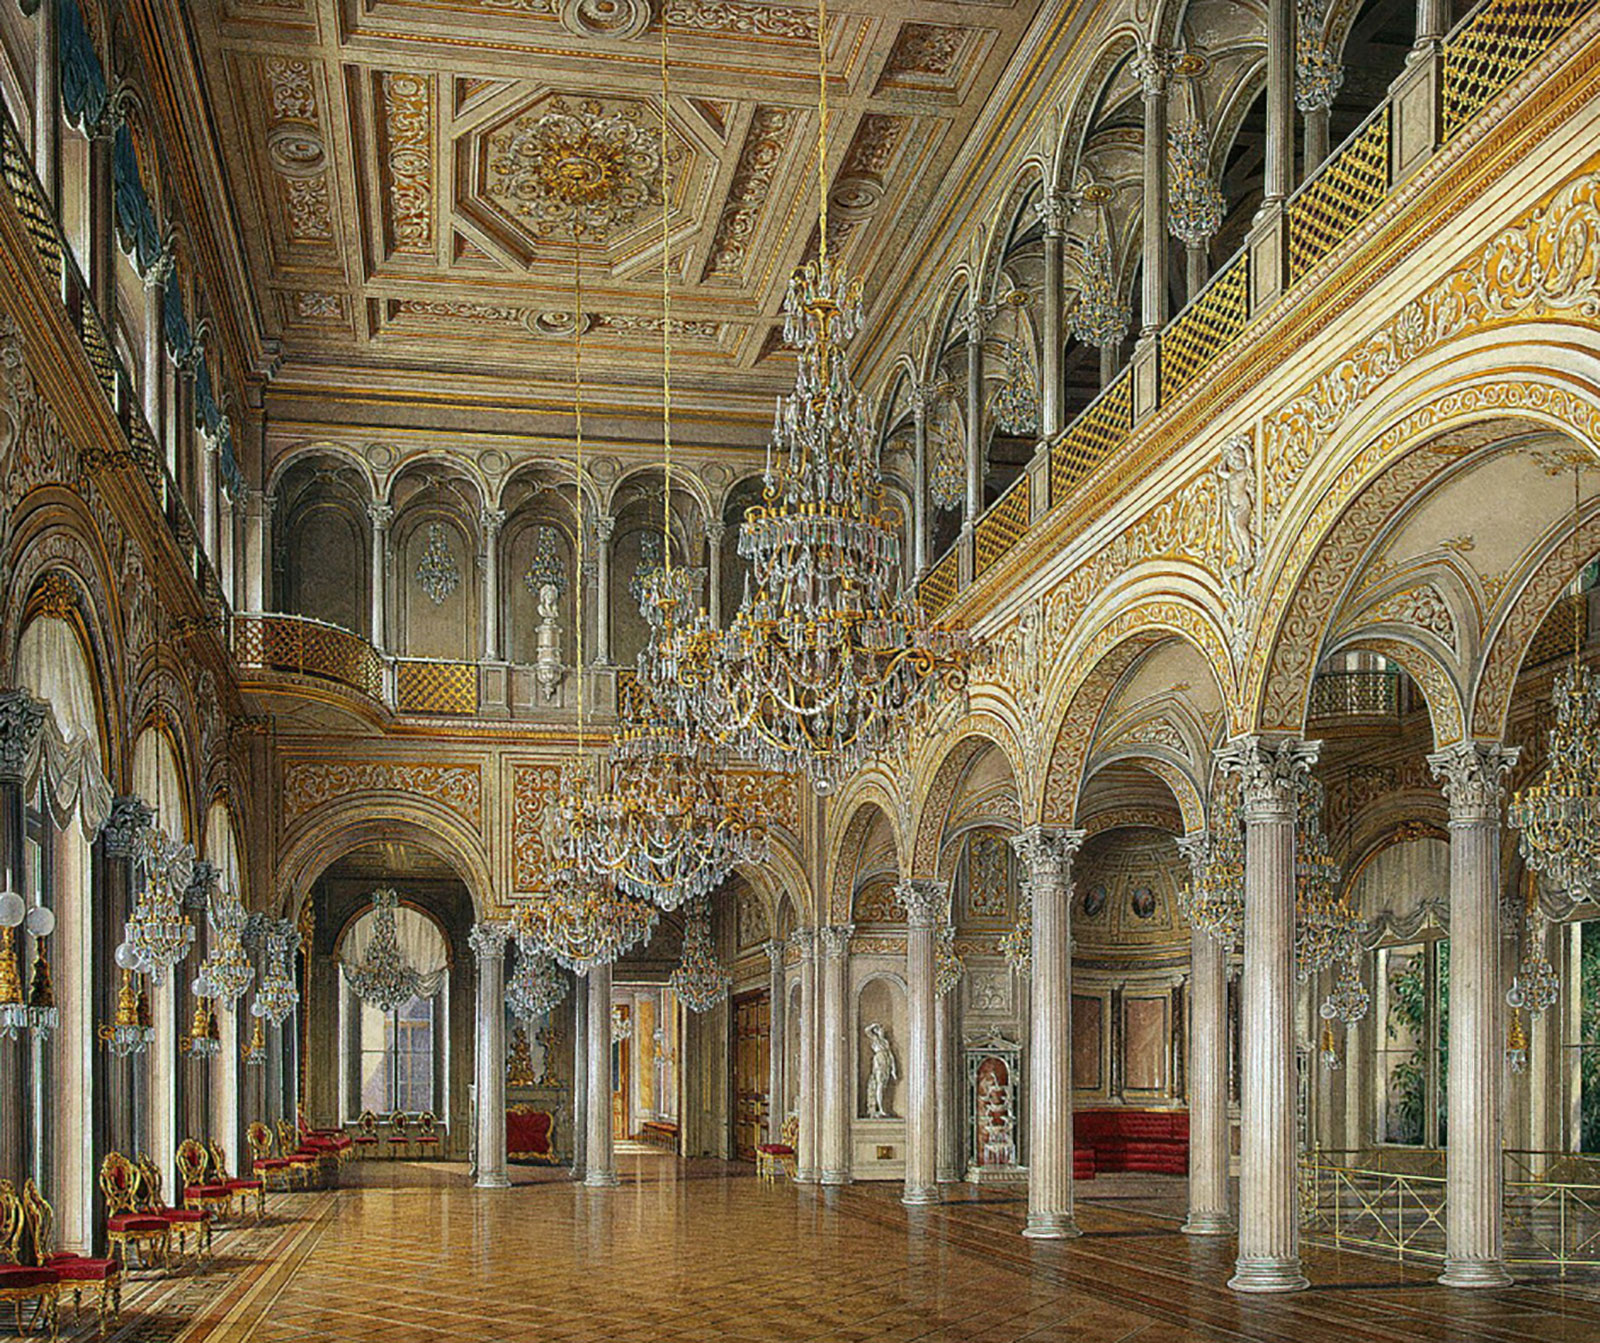 Павильонный зал, картина Гау Э.П., 1860-е гг.